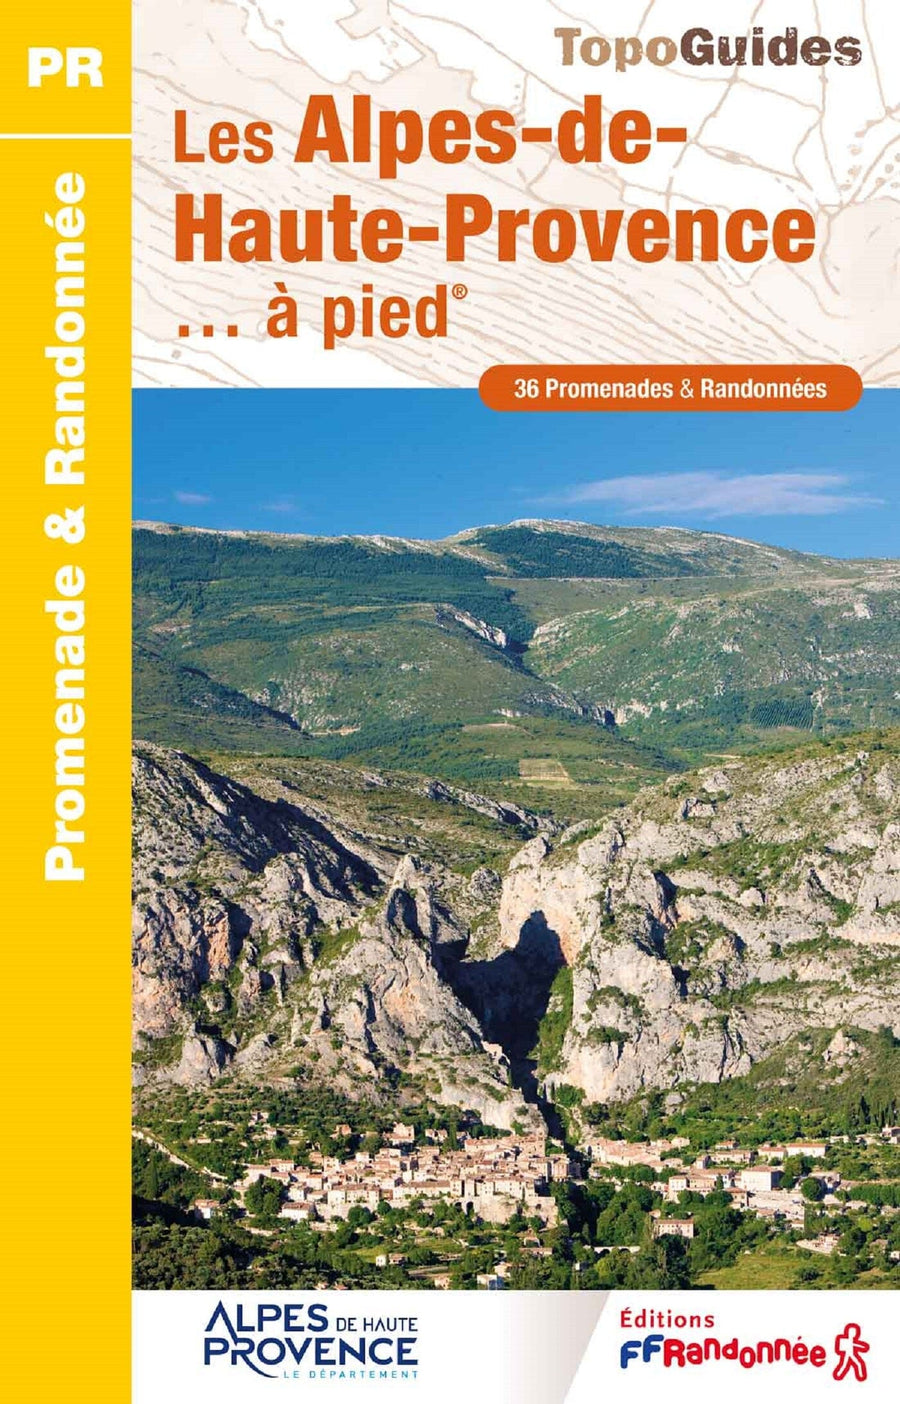 Topoguide de randonnée - Alpes-de-Haute-Provence | FFR guide de randonnée FFR - Fédération Française de Randonnée 